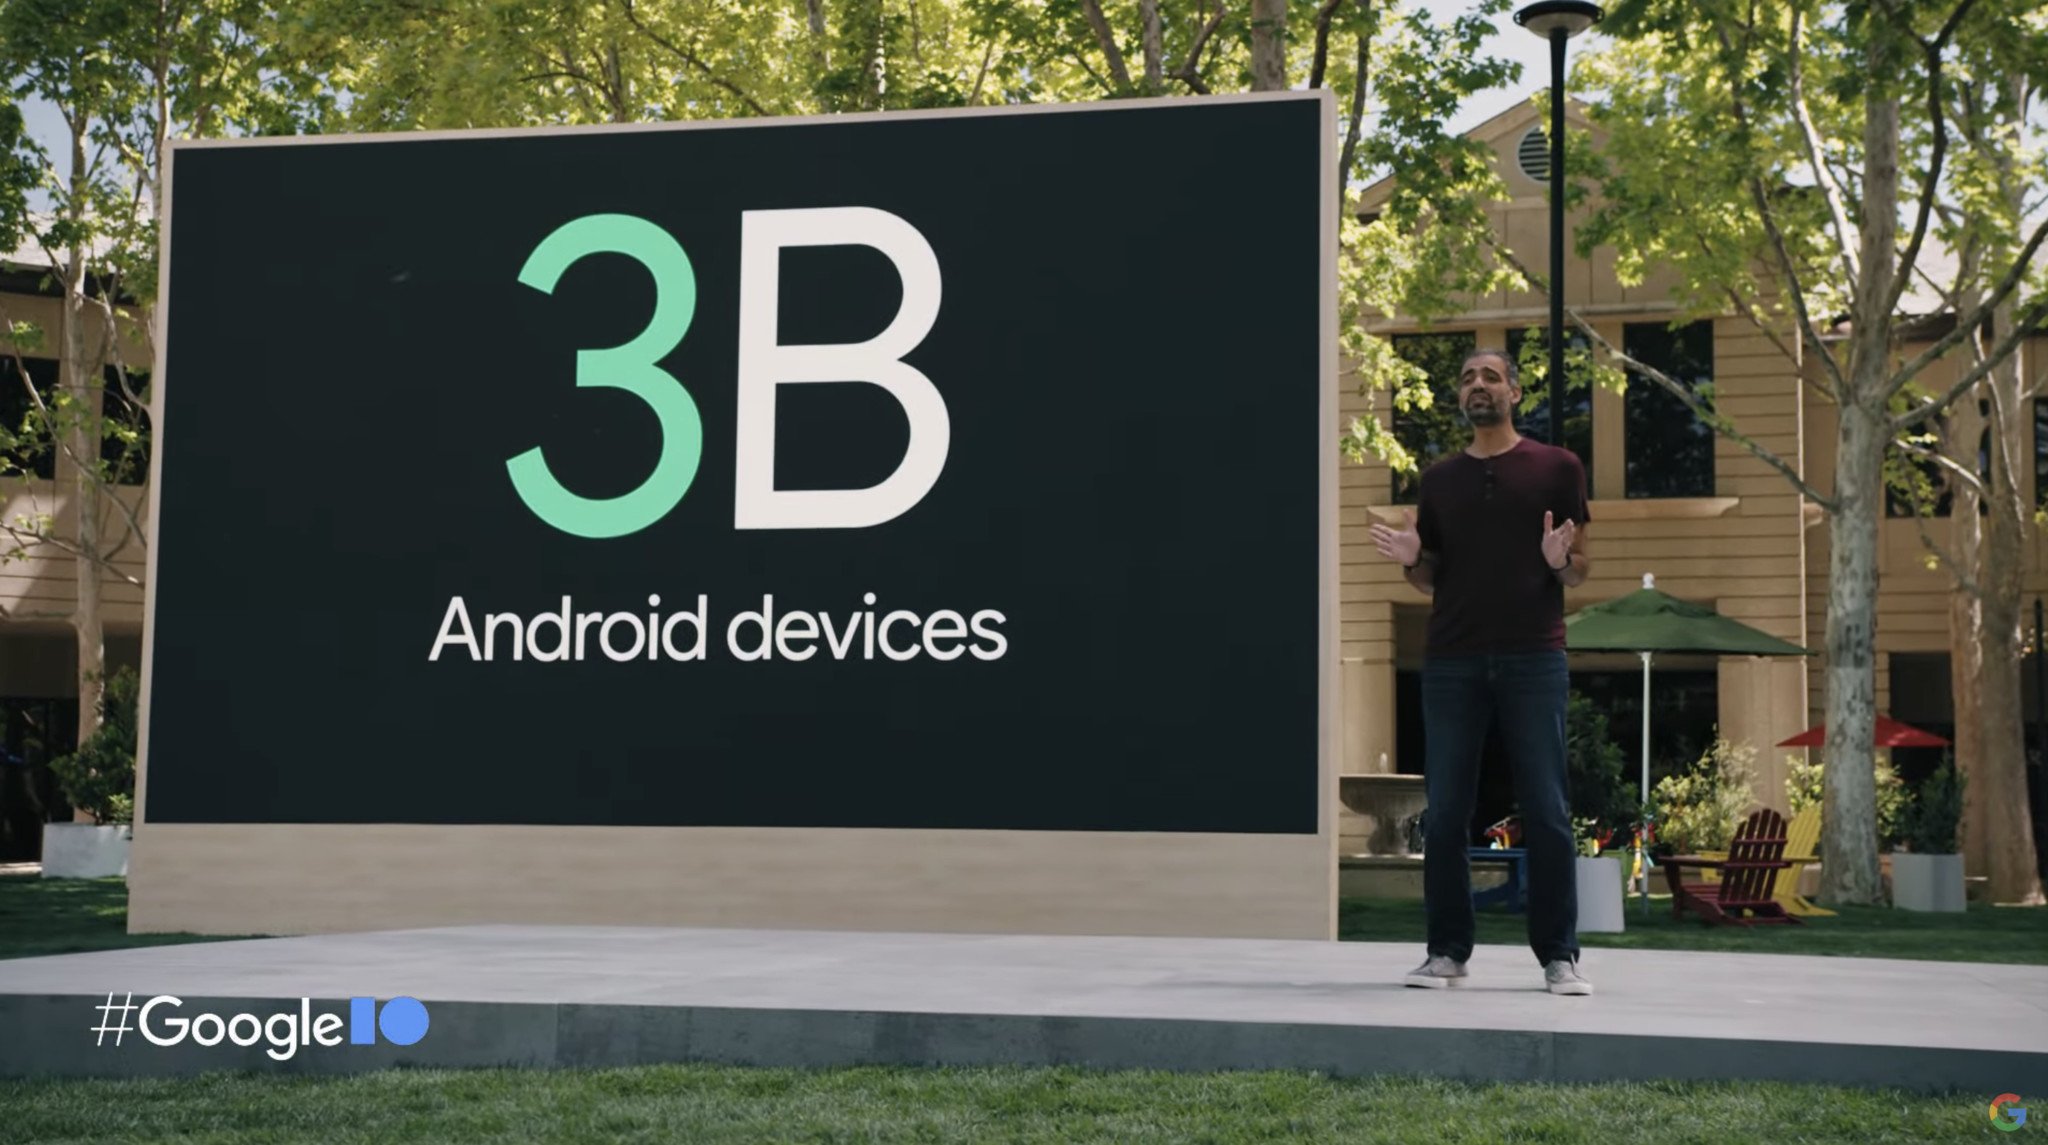 Google I/O 2021 Keynote 3 Billion Android Devices